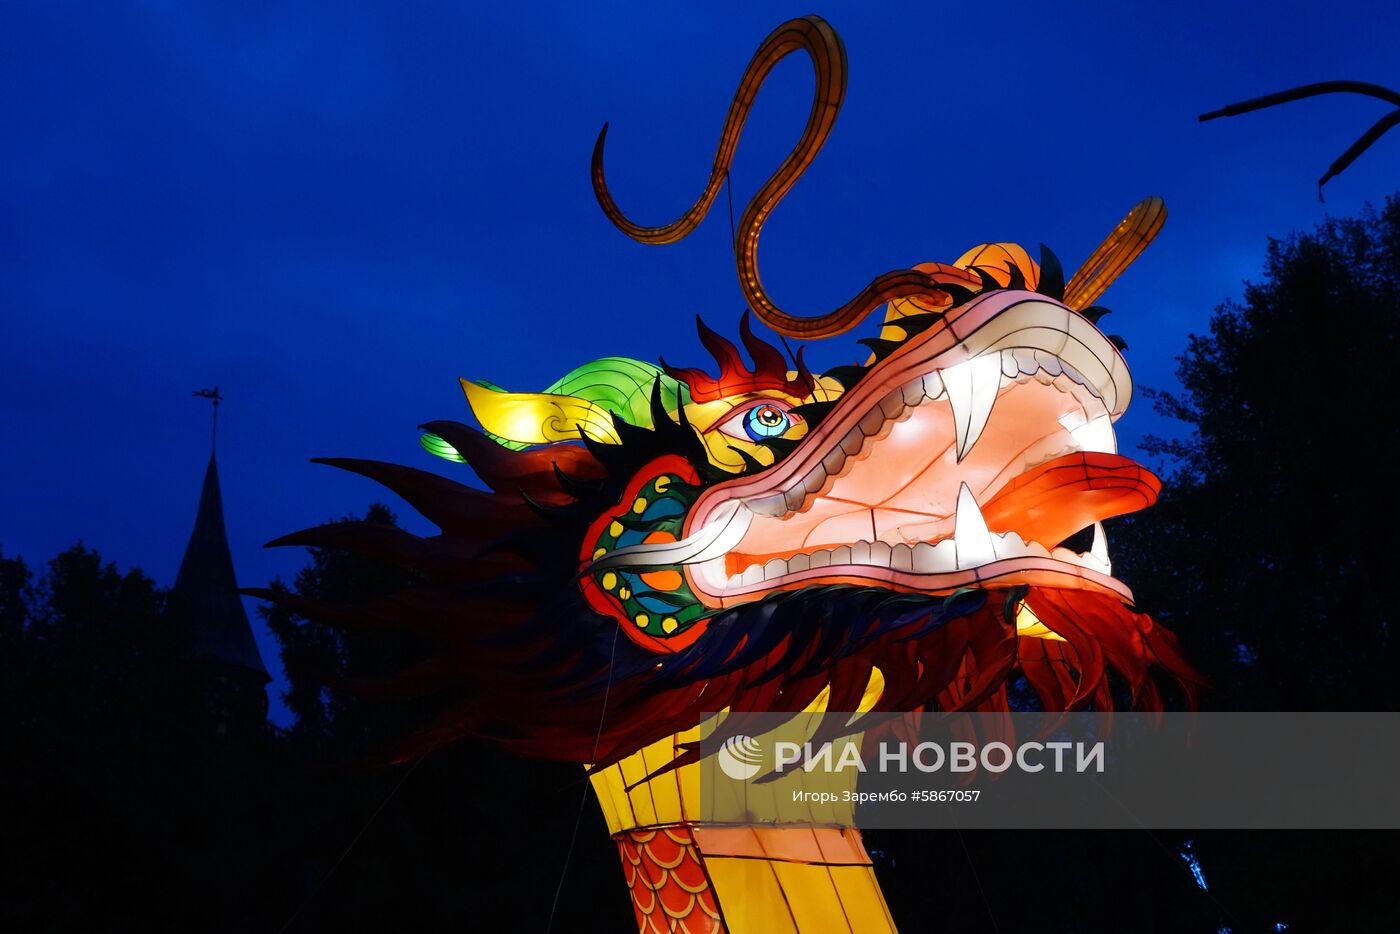 Фестиваль гигантских китайских фонарей в Калининграде